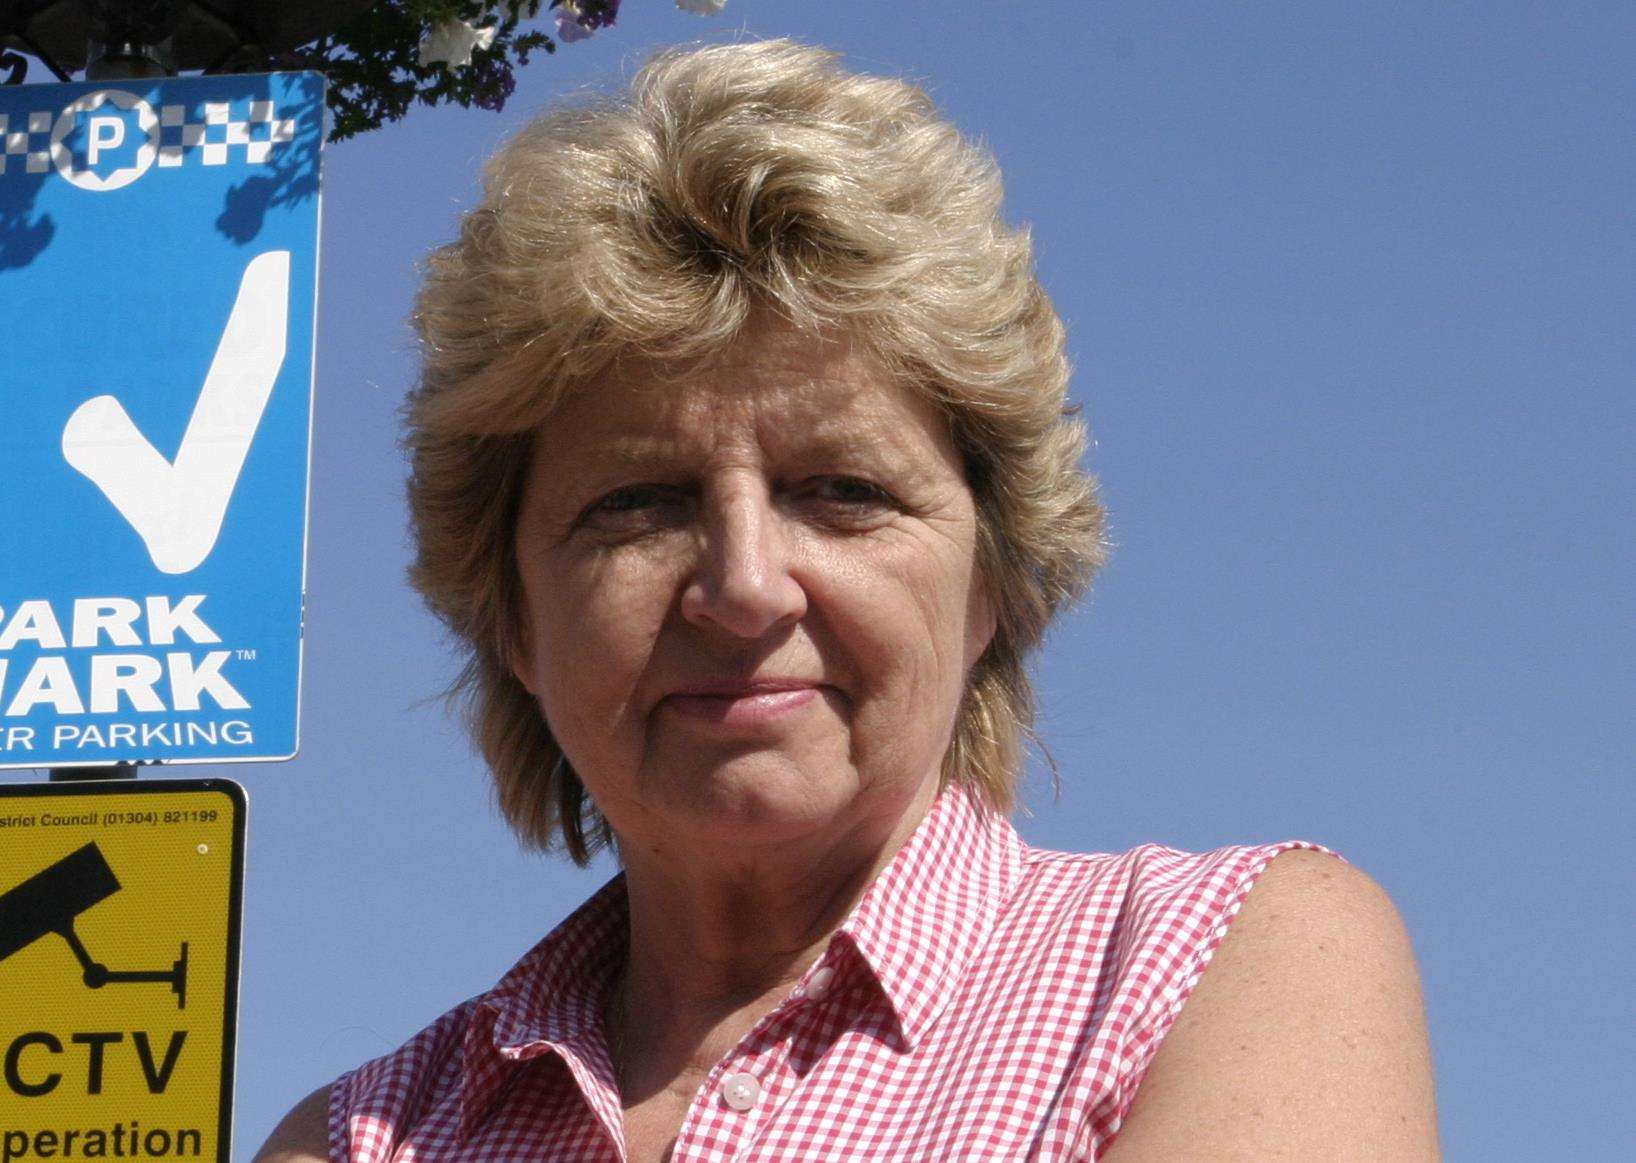 Pam Tobin in 2005